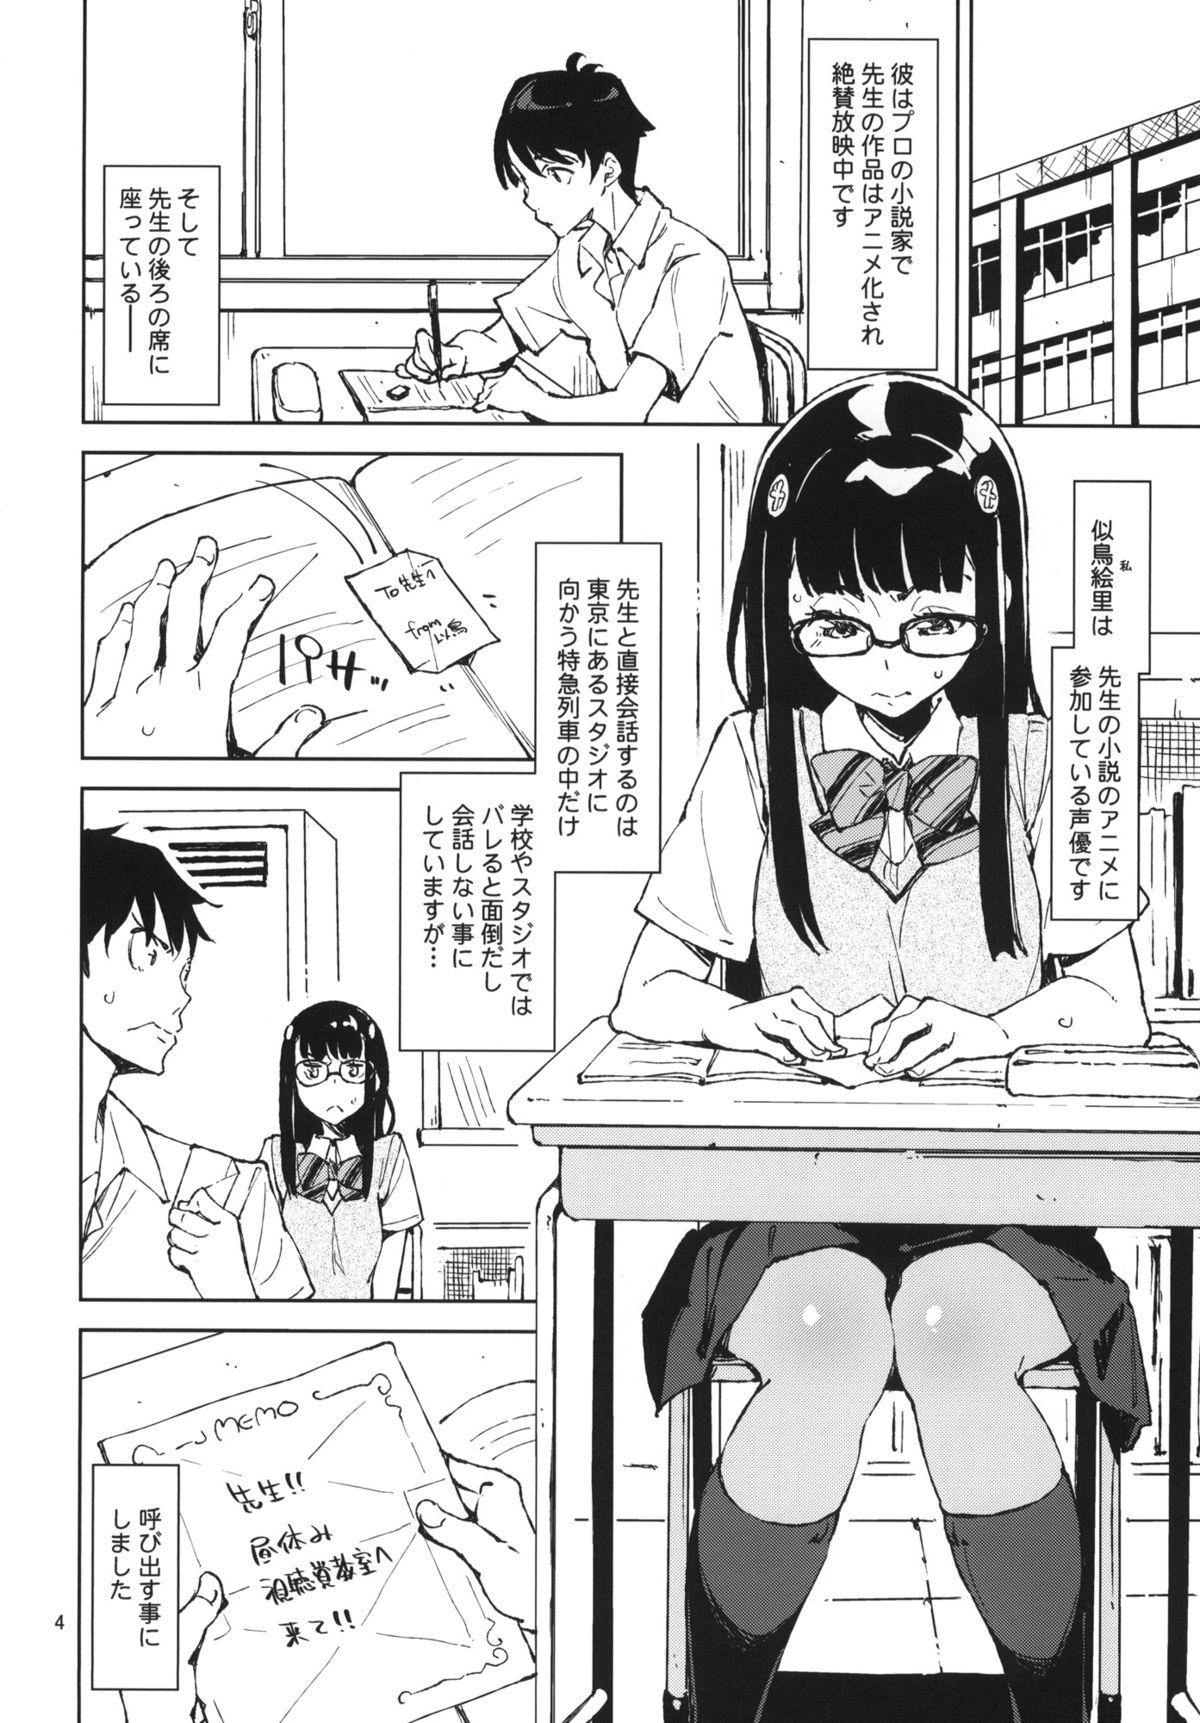 Nice Ass Pony - Danshi koukousei de urekko light novel sakka o shiteiru keredo Teenie - Page 3